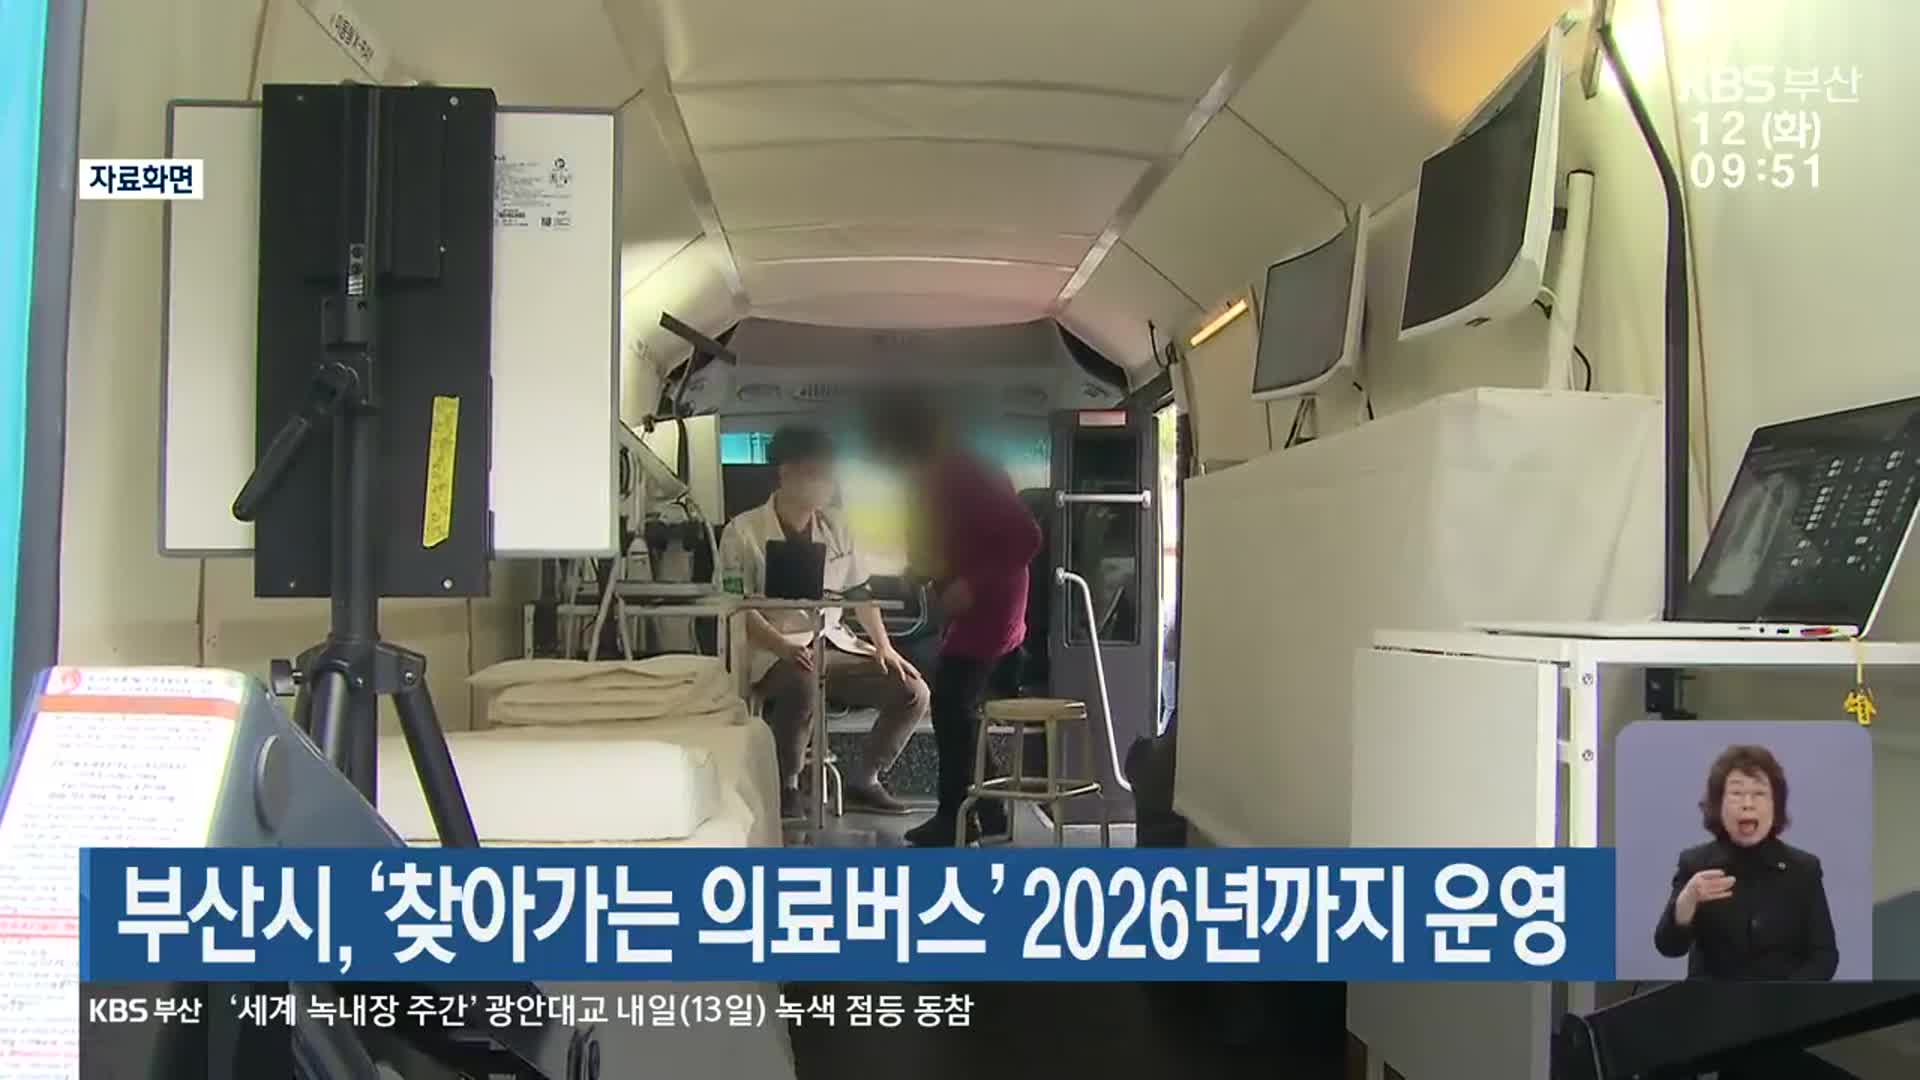 부산시, ‘찾아가는 의료버스’ 2026년까지 운영